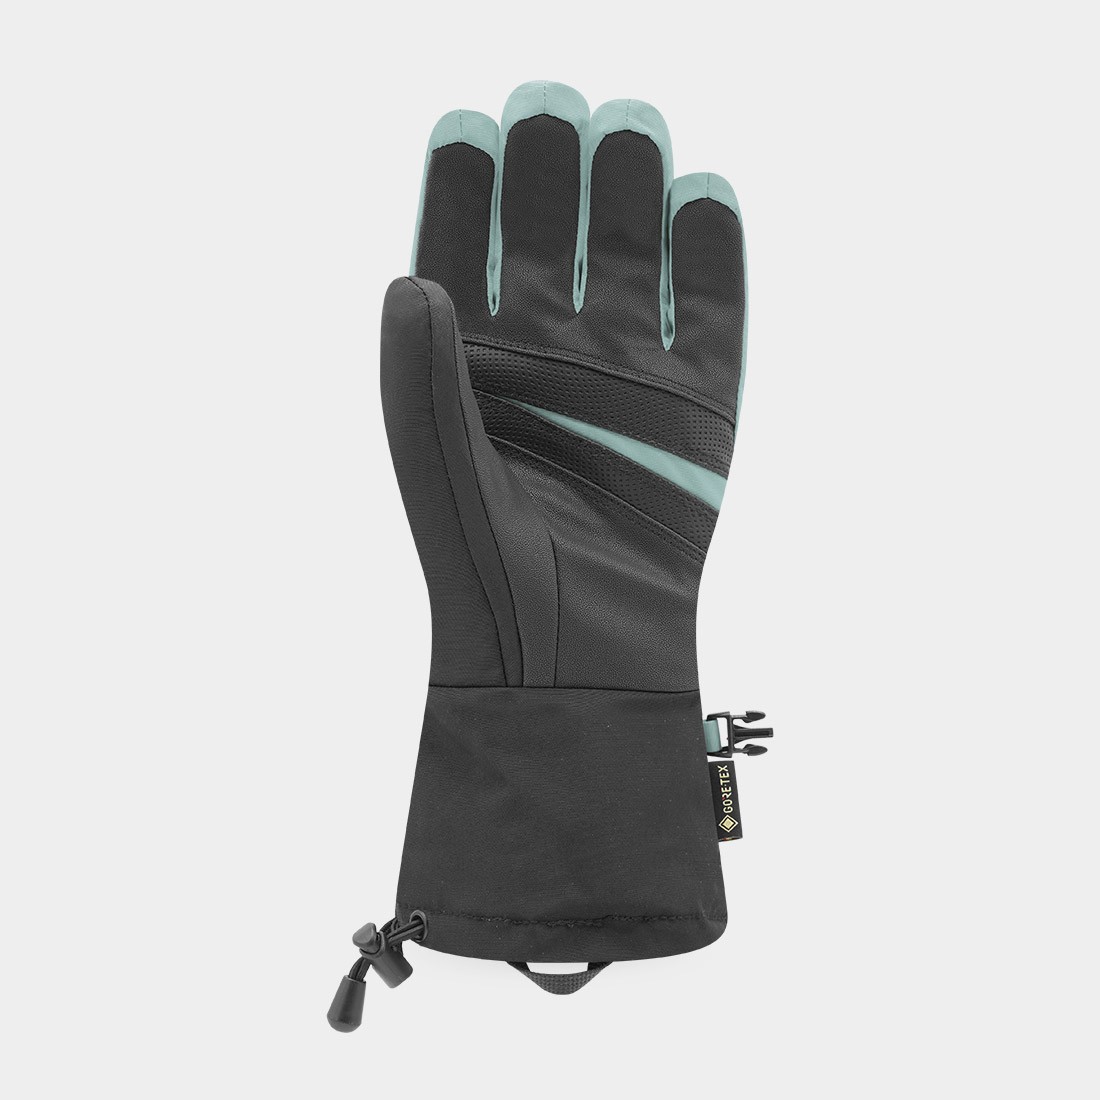 GRAVEN 5 - men's ski gloves